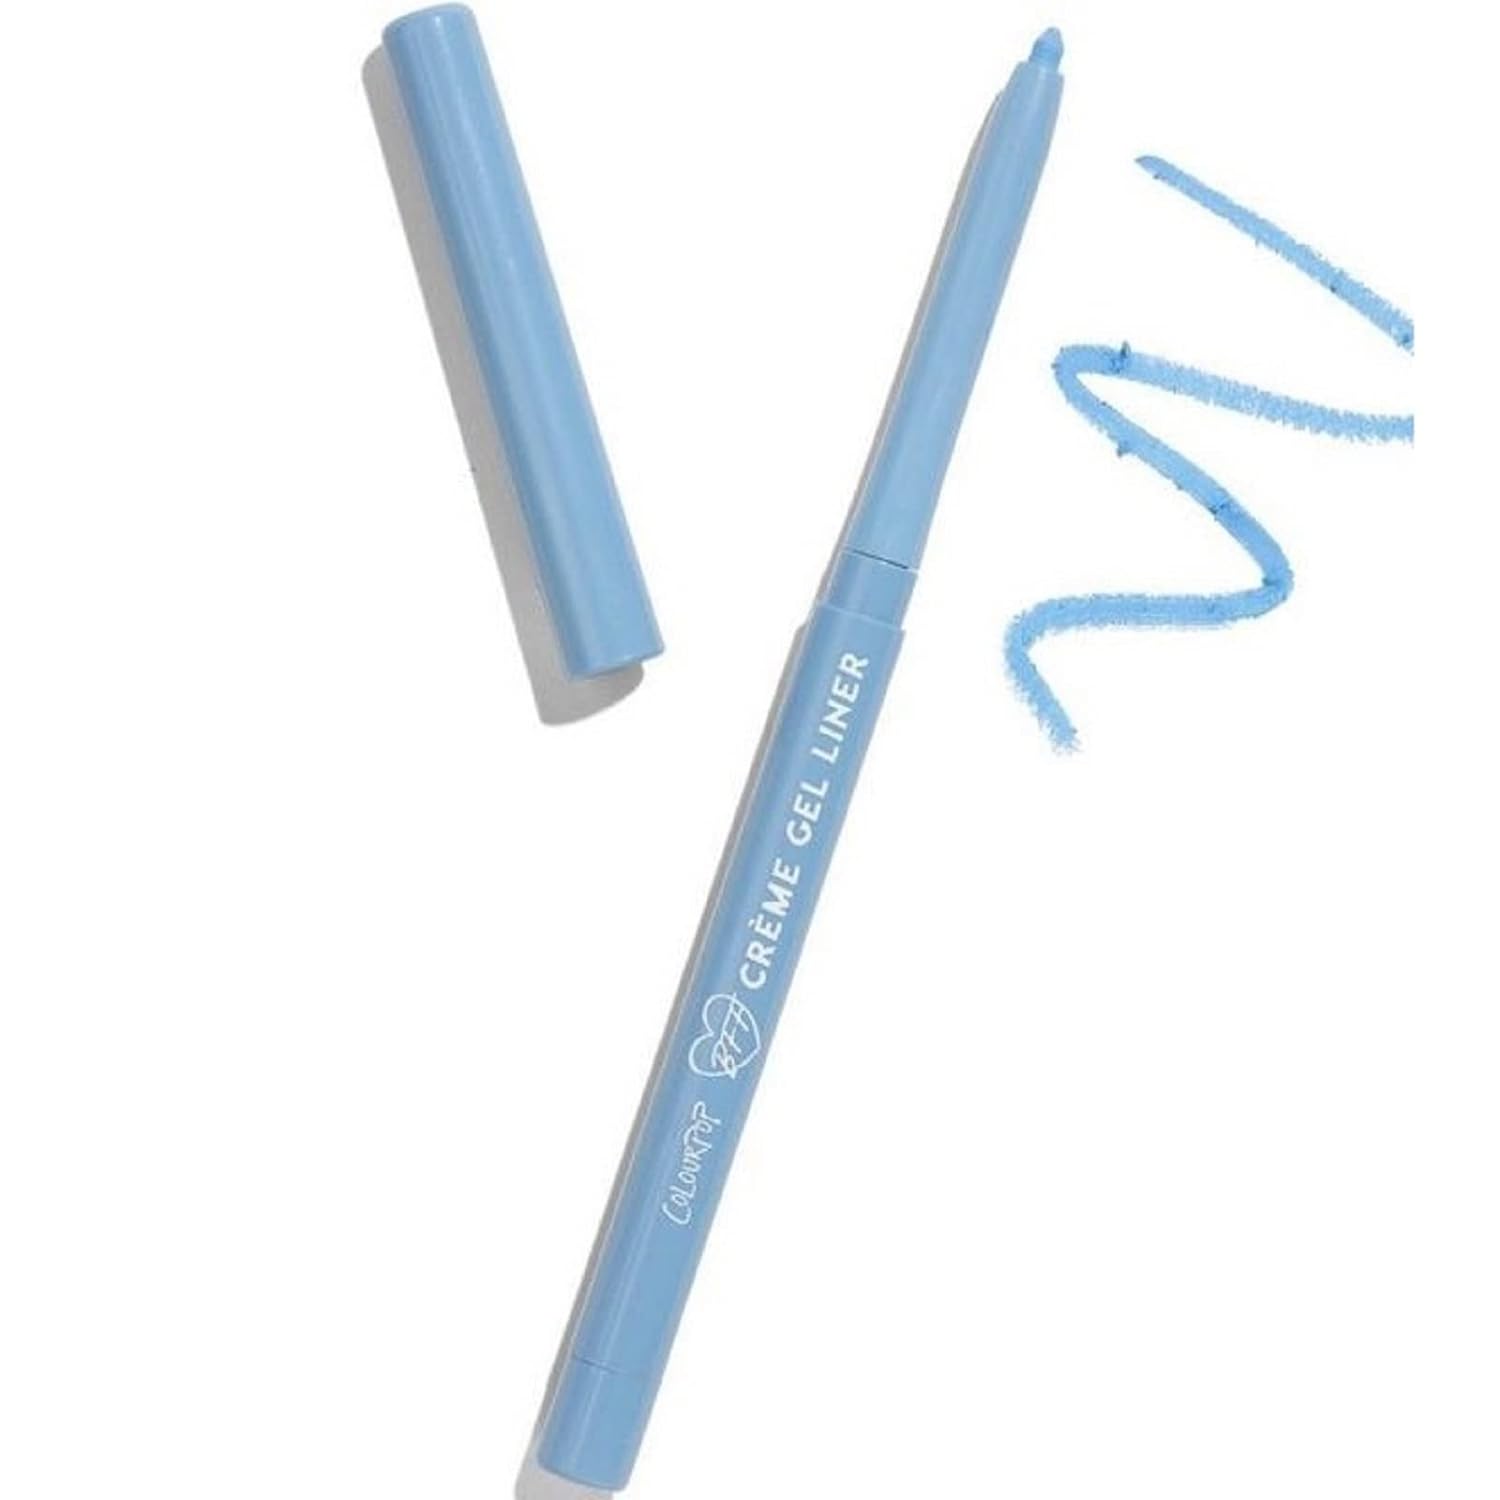 Colourpop PRANCE Matte Creme Gel Eyeliner Retractable Pencil (Light Periwinkle Blue), 0.2g (0.007 )